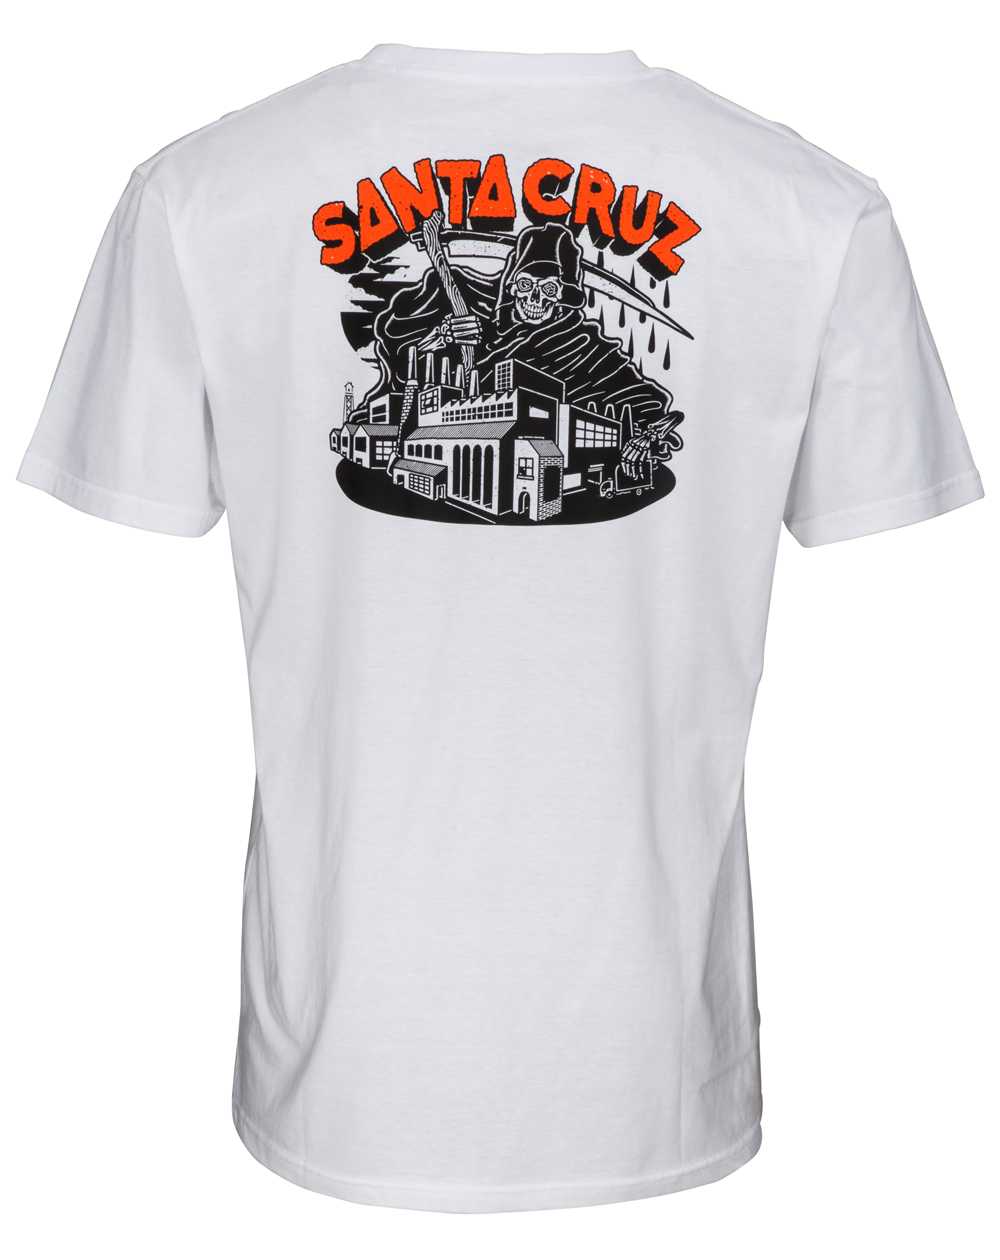 Santa Cruz Fate Factory Camiseta para Hombre White